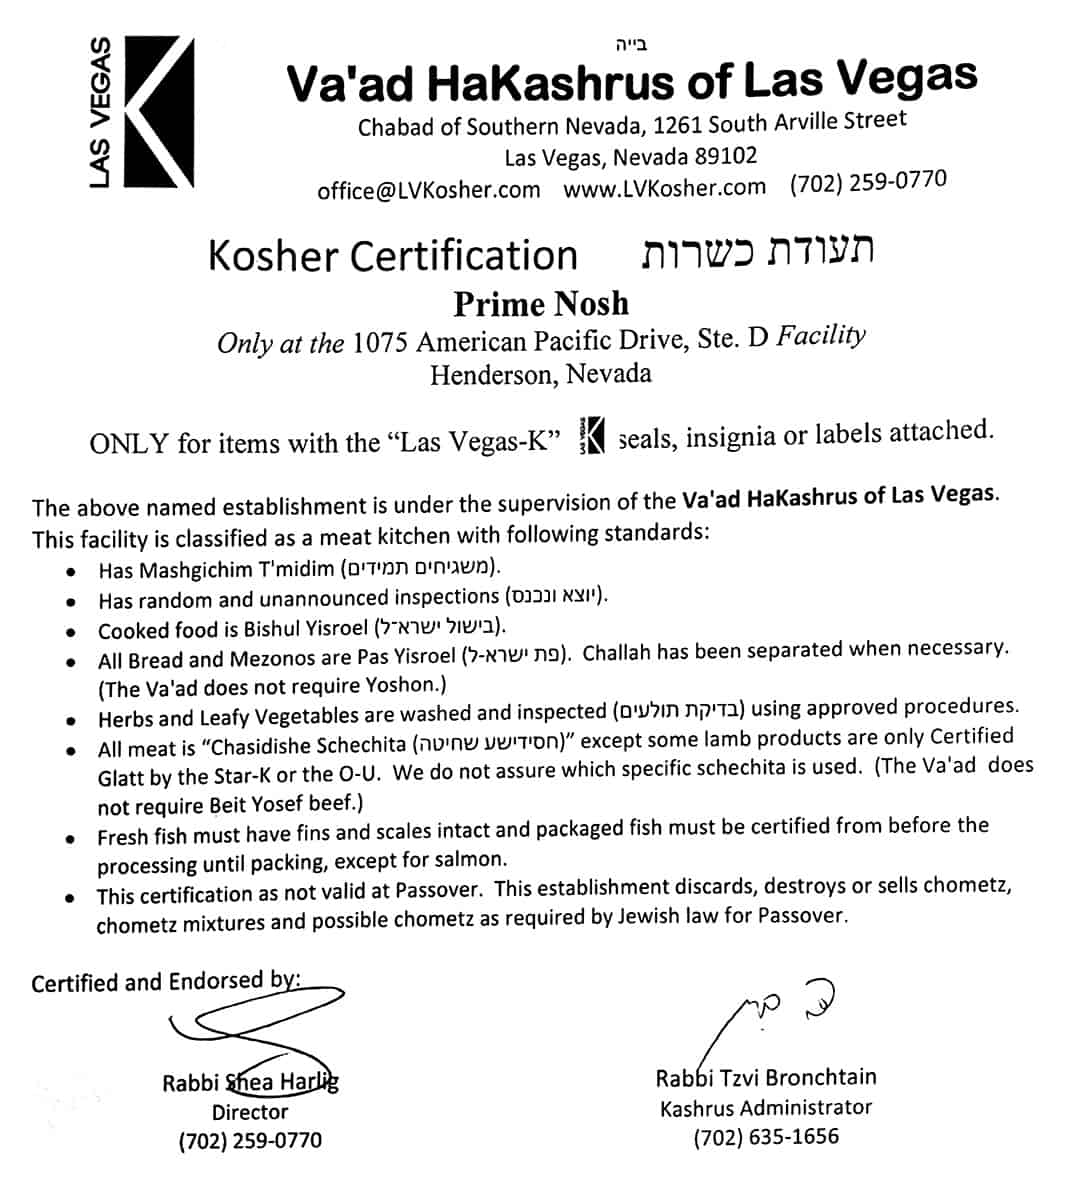 Va'ad HaKashrus of Las Vegas Certificate for Prime Nosh